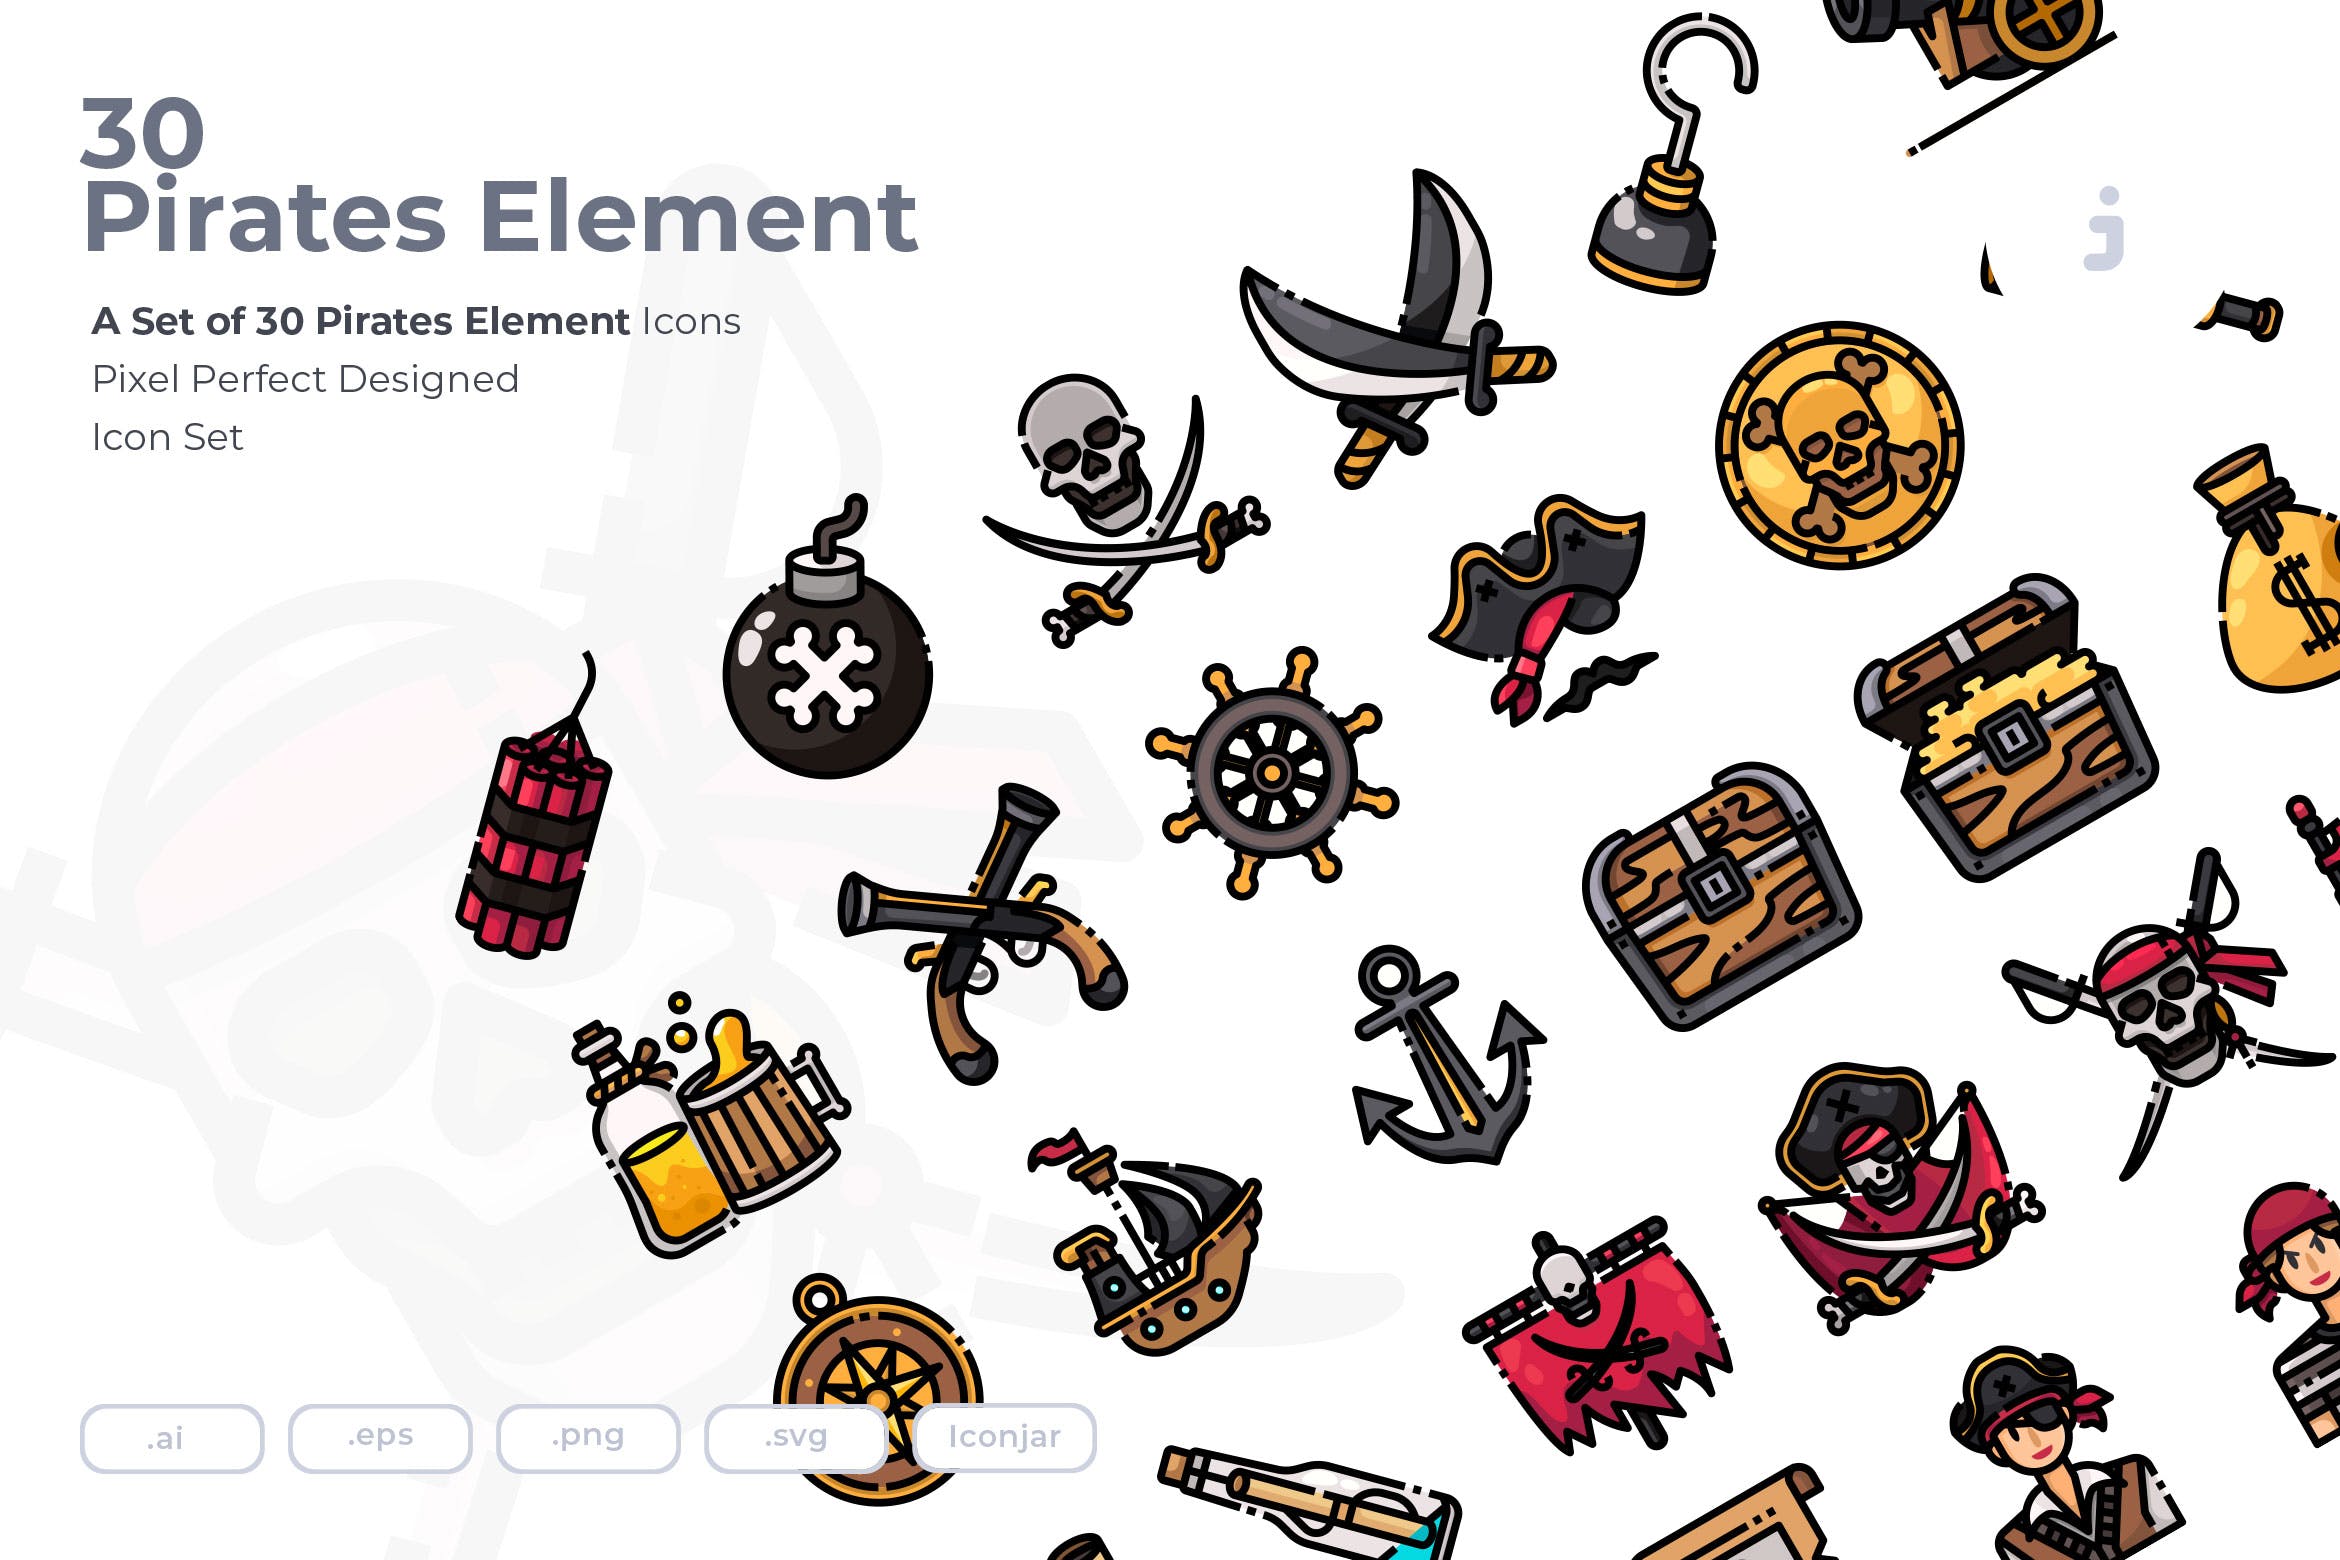 30海盗元素系列图标源文件下载30 Pirates Element Icons